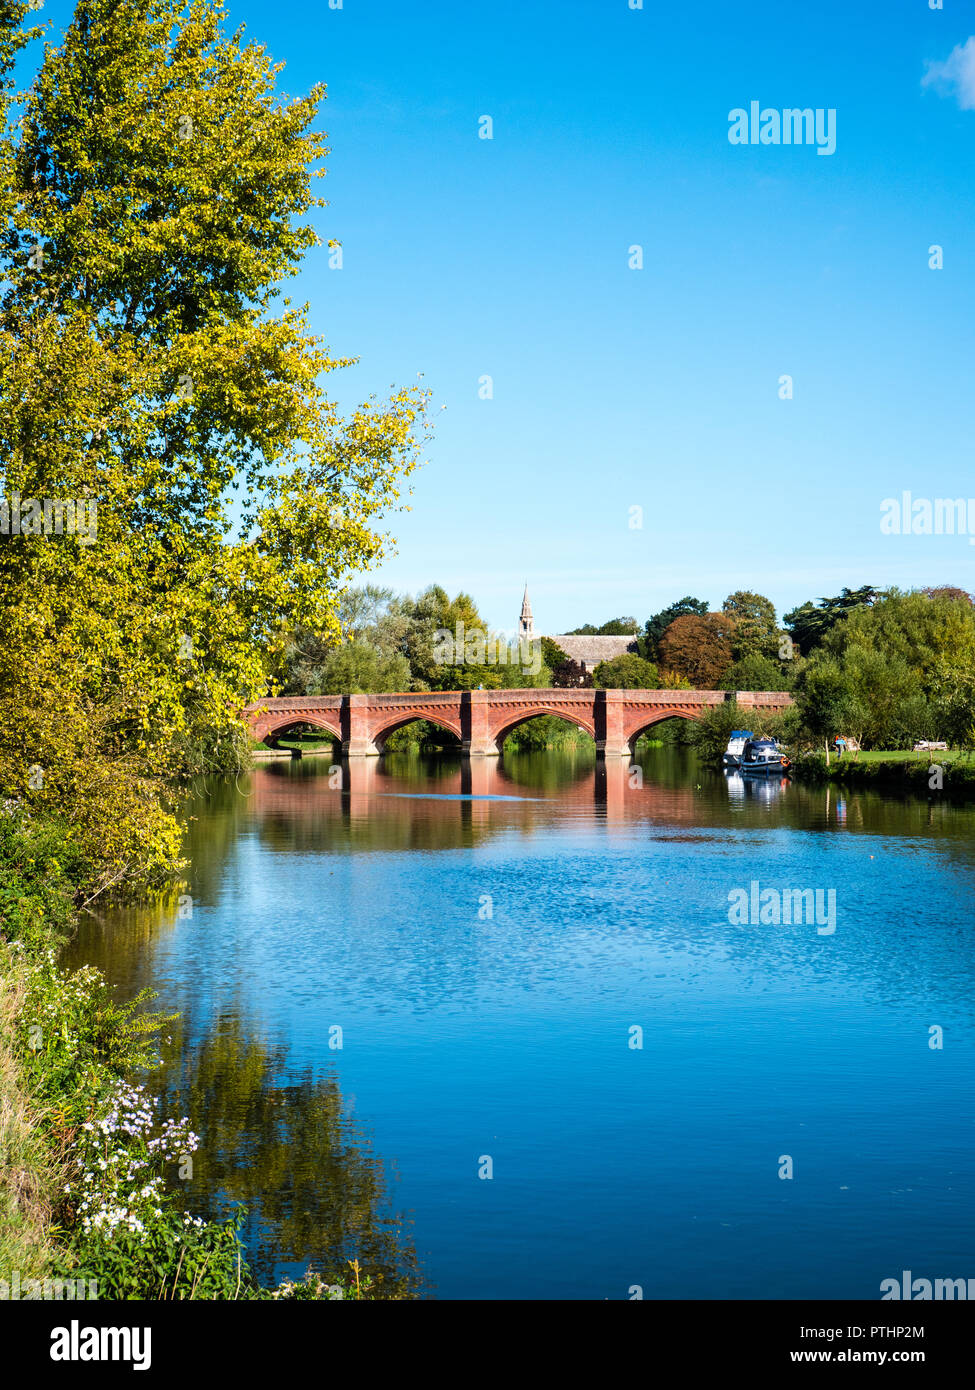 Clifton Hampden Bridge,Clifton Hampden, River Thames, Oxfordshire, England, UK, GB. Stock Photo